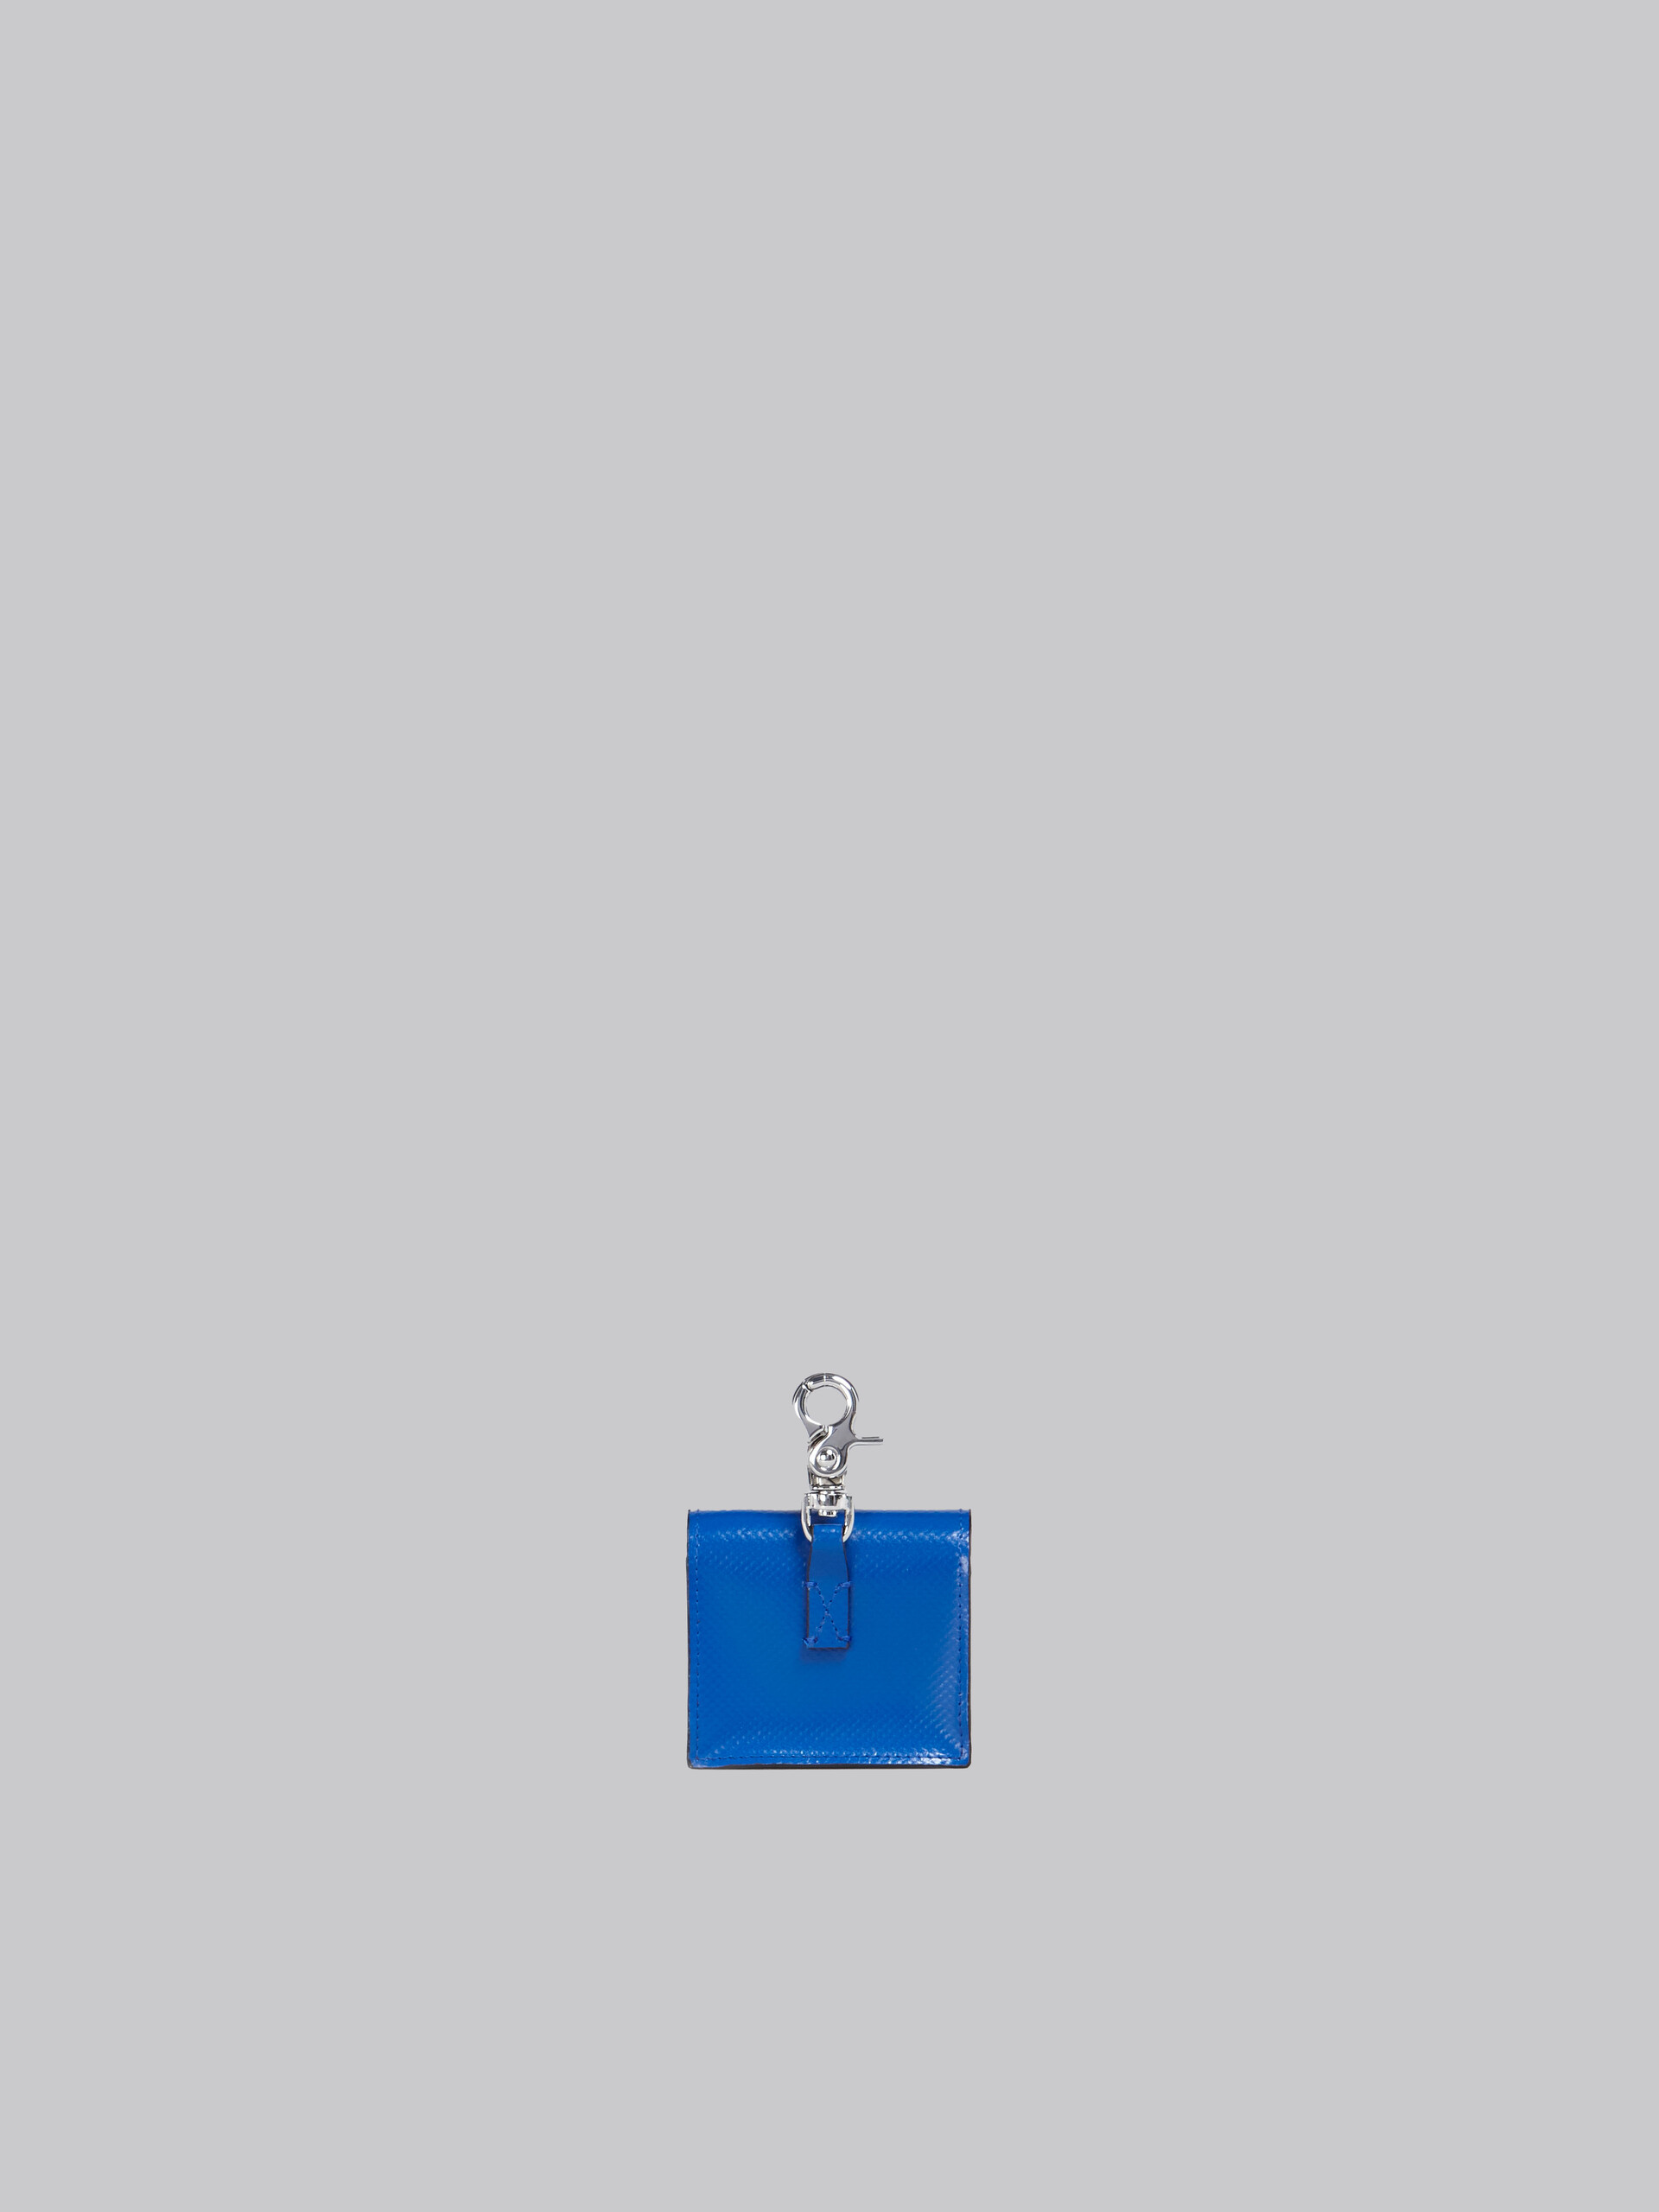 블랙 및 블루 에어팟 케이스 - Wallets and Small Leather Goods - Image 3